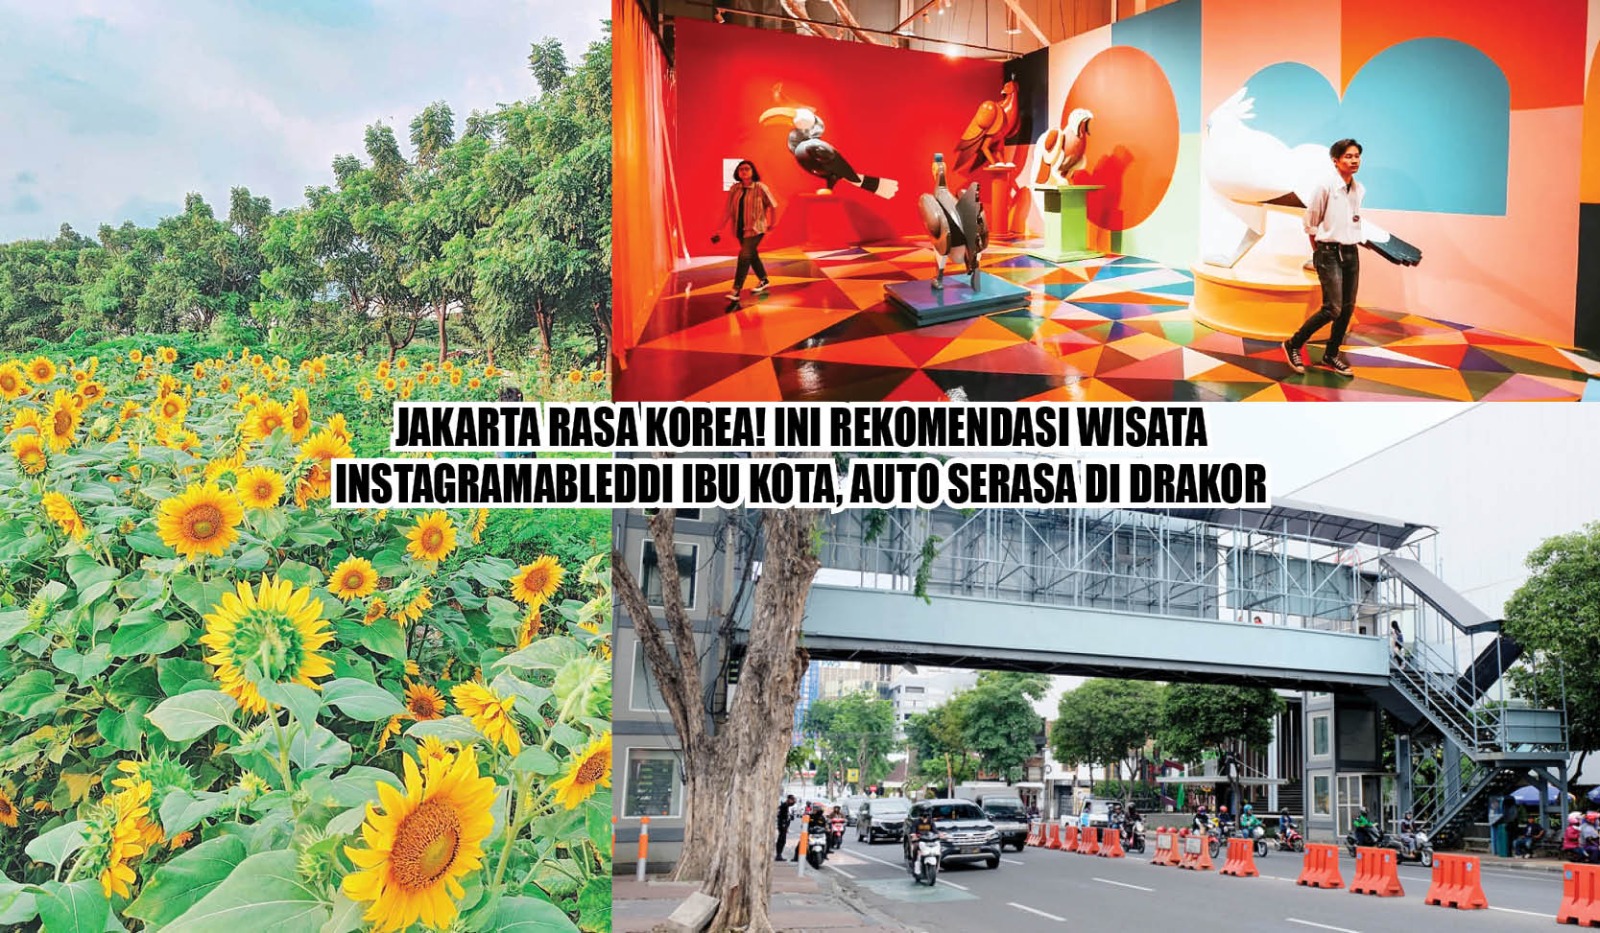 Jakarta Rasa Korea! Ini 8 Rekomendasi Wisata Instagramable di Ibu Kota, Auto Serasa di Drakor